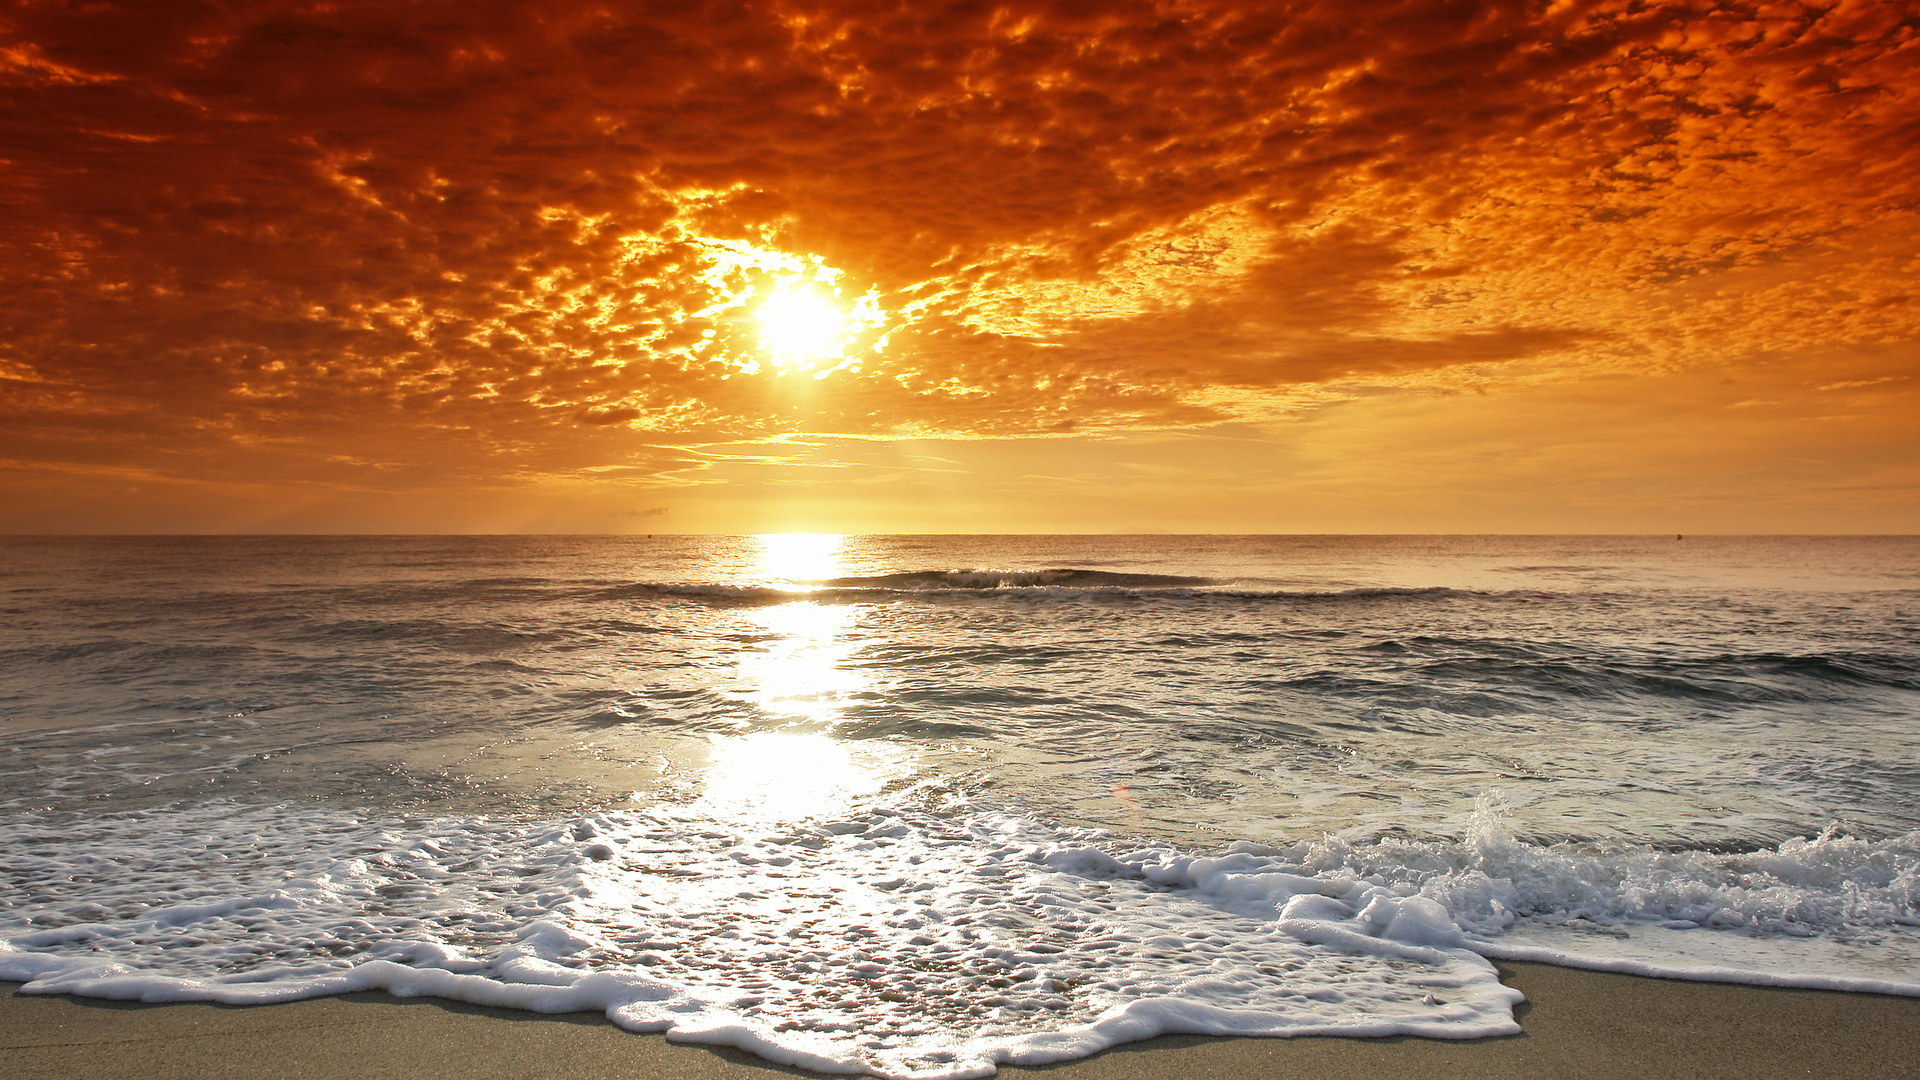 والپیپر زیبا و دیدنی از ساحل با غروب خورشید 